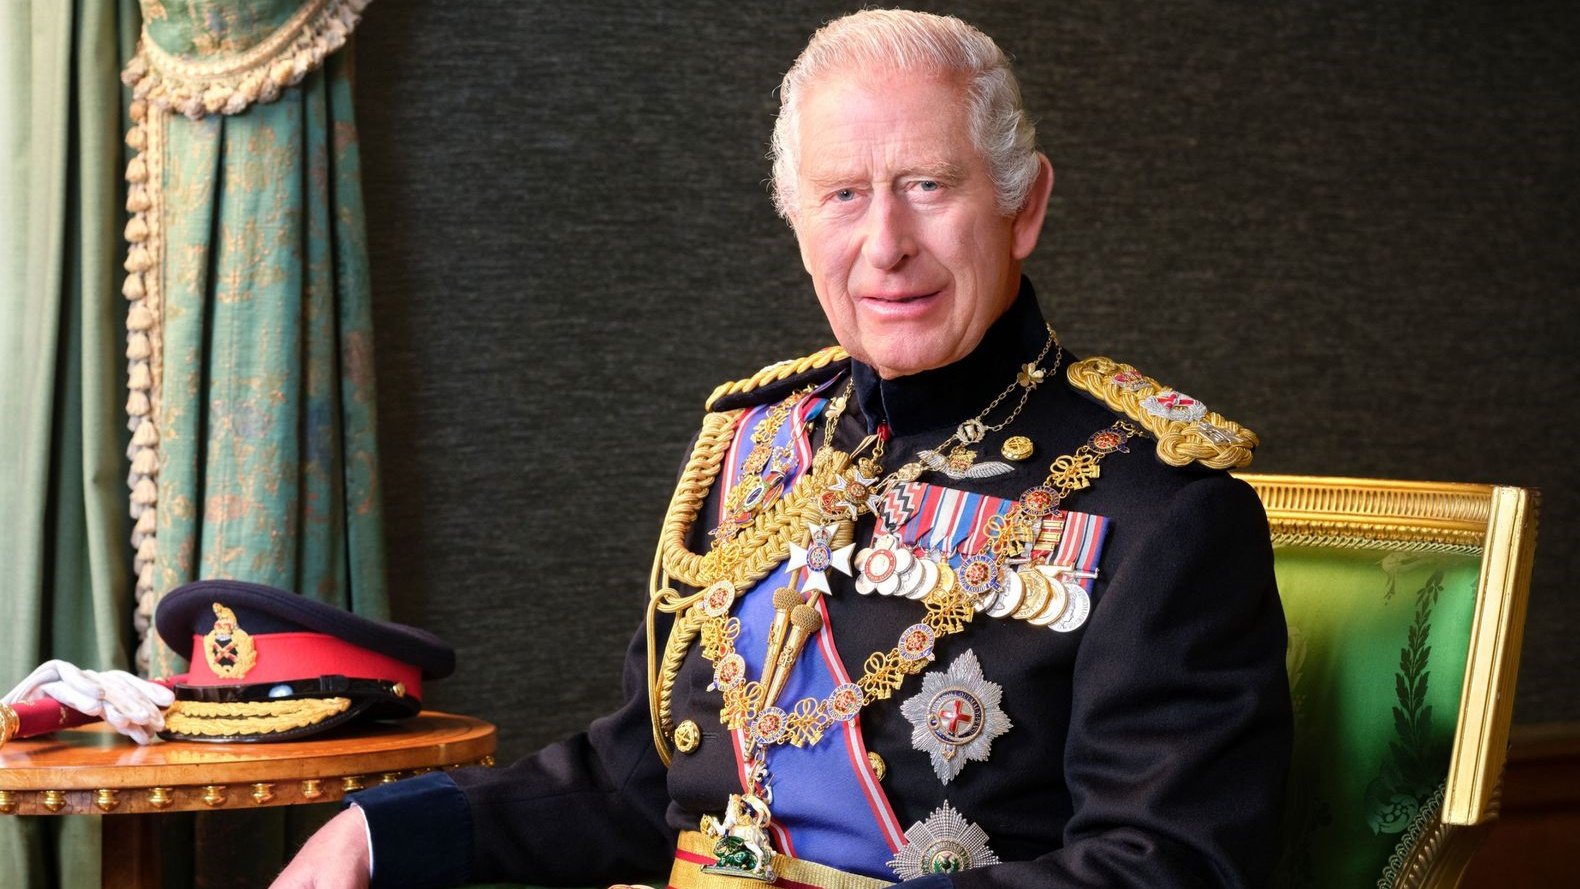 القصر الملكي نشر صورة جديدة بالزي العسكري للملك تشارلز 